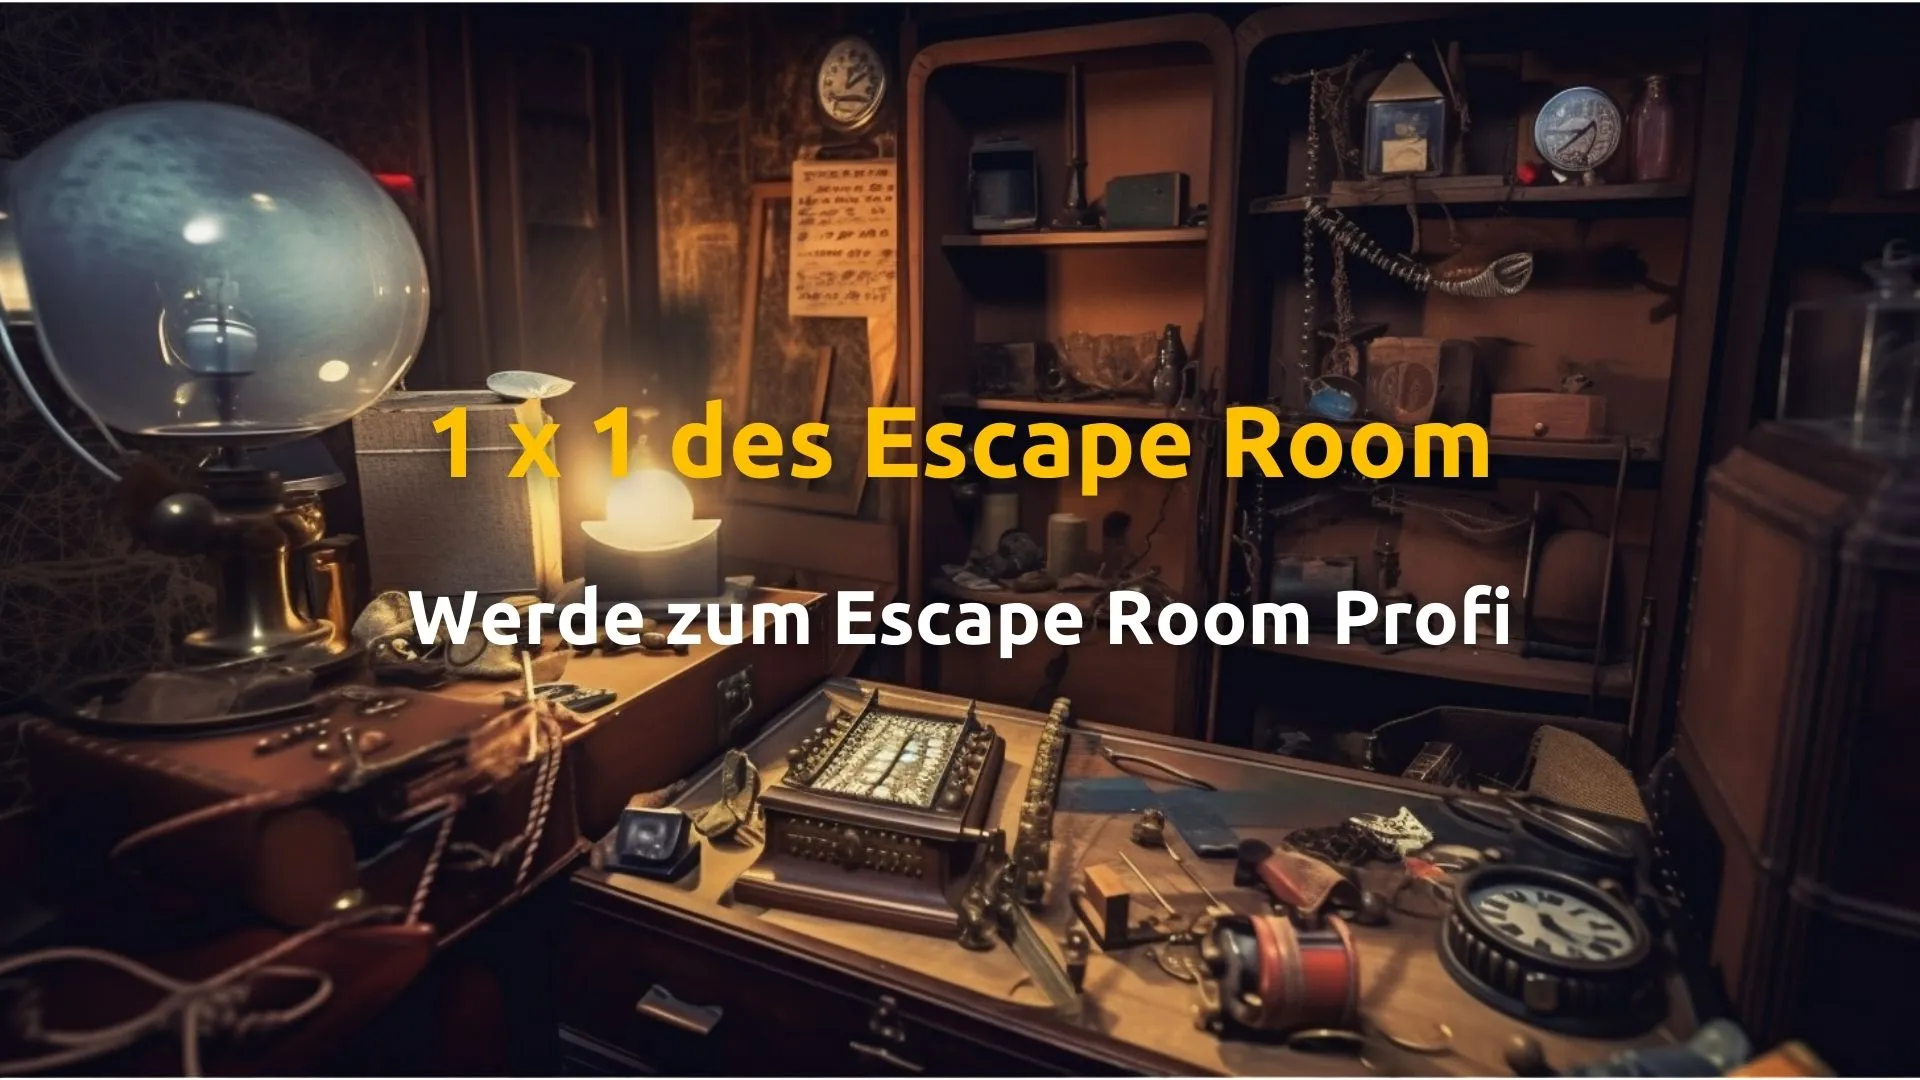 1x1 des Escape Room, Anleitung zum Escape Room Profi